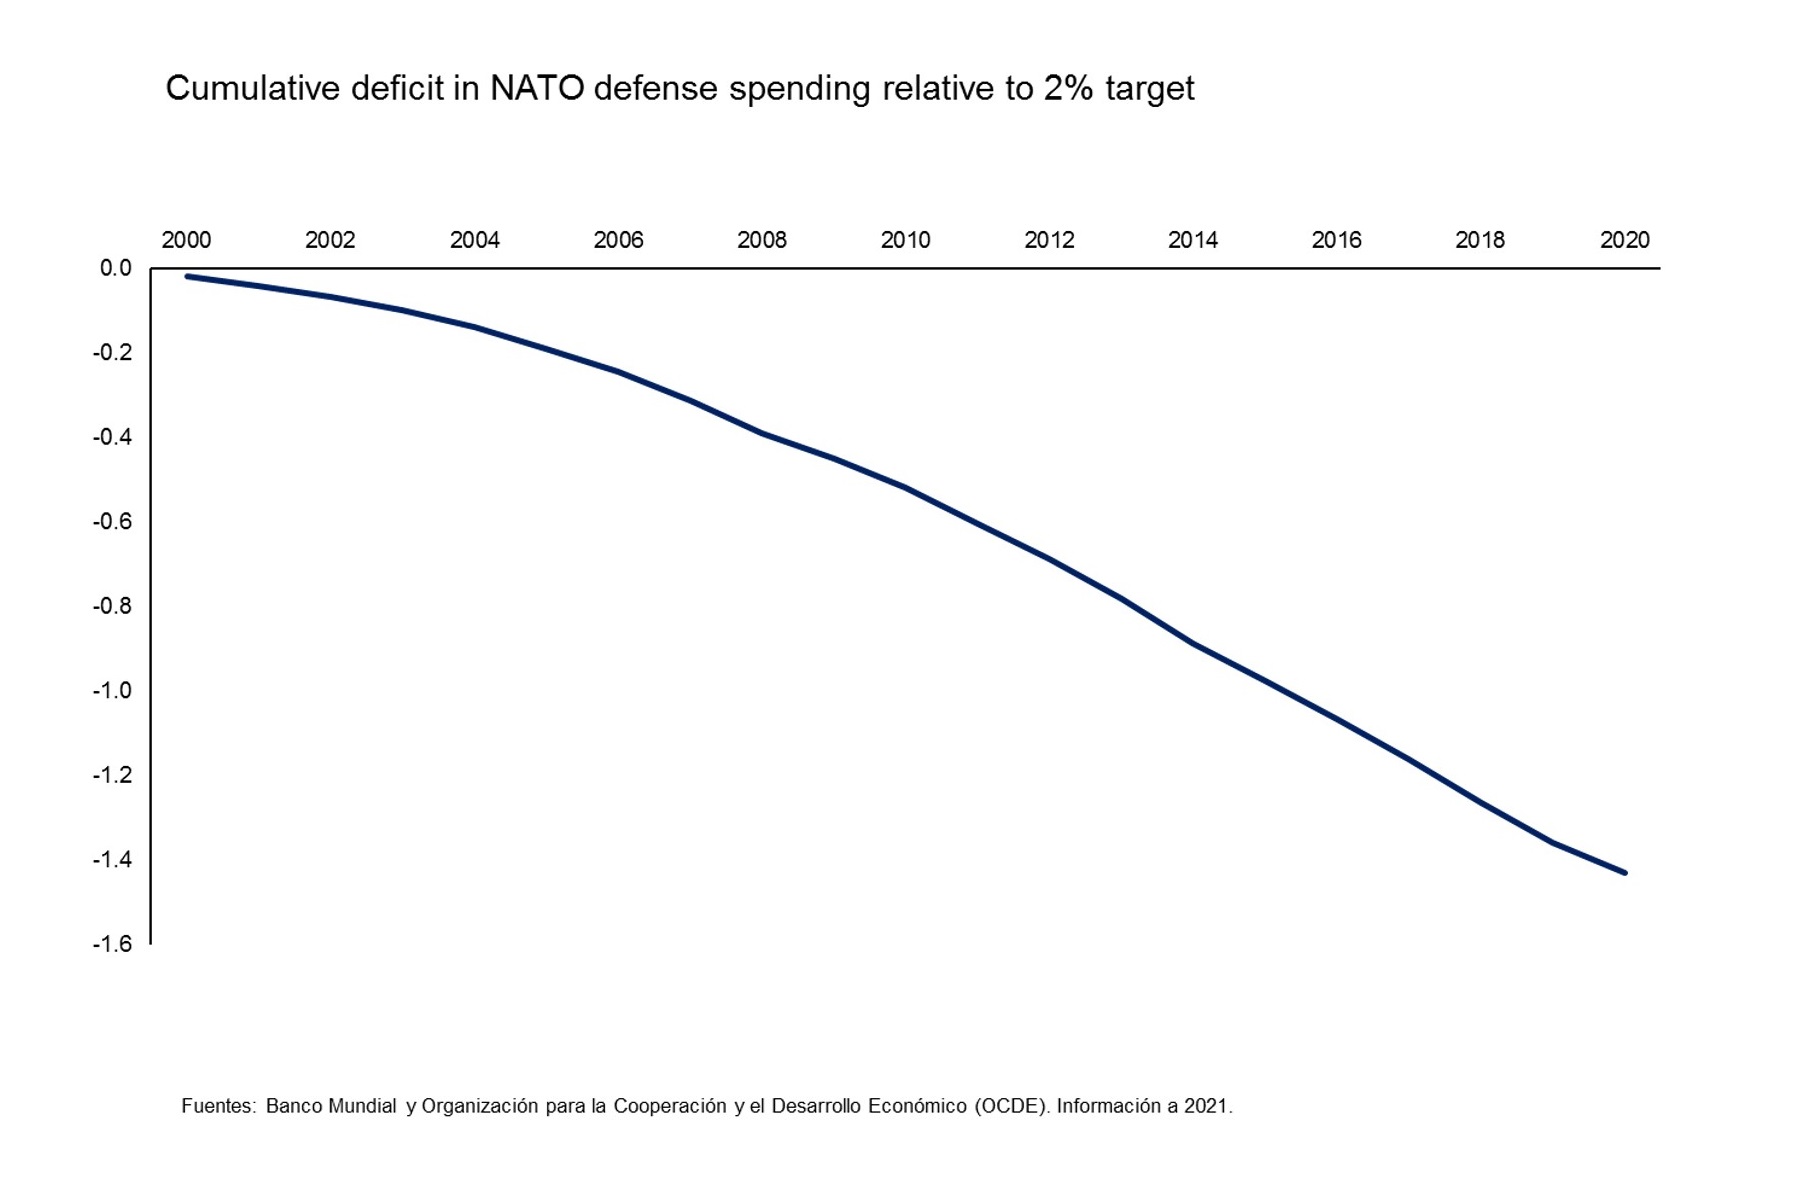 Déficit acumulado del gasto en defensa de la OTAN respecto al objetivo de 2%